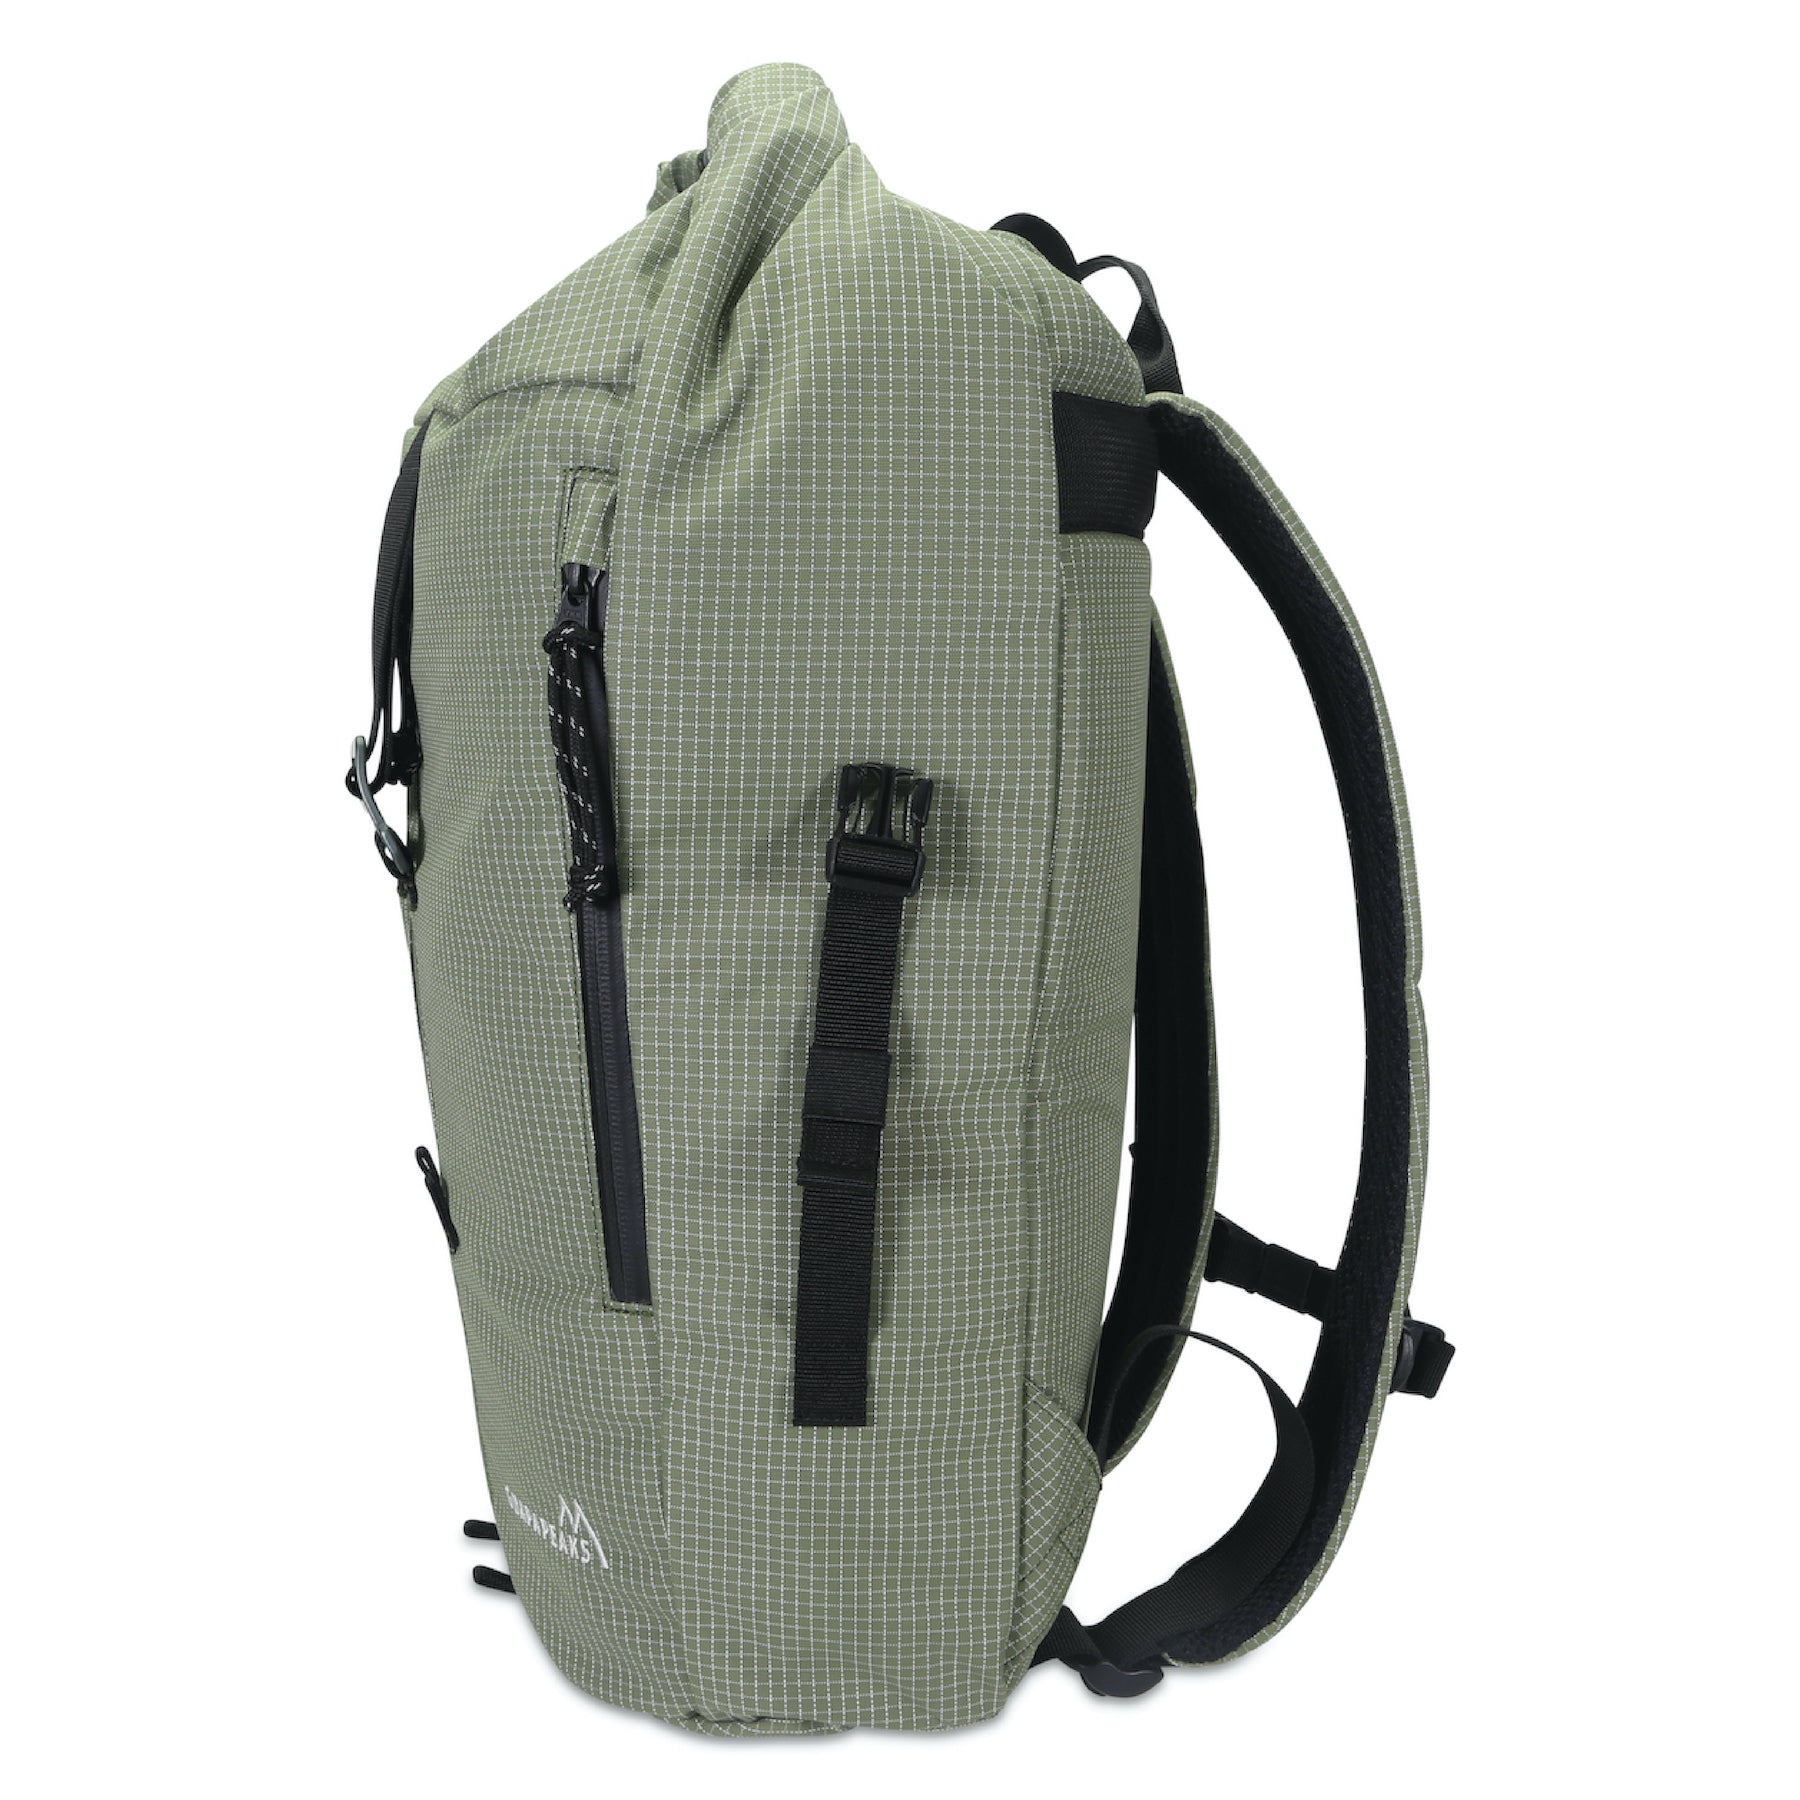 UhfmrShops, alvion roll top backpack